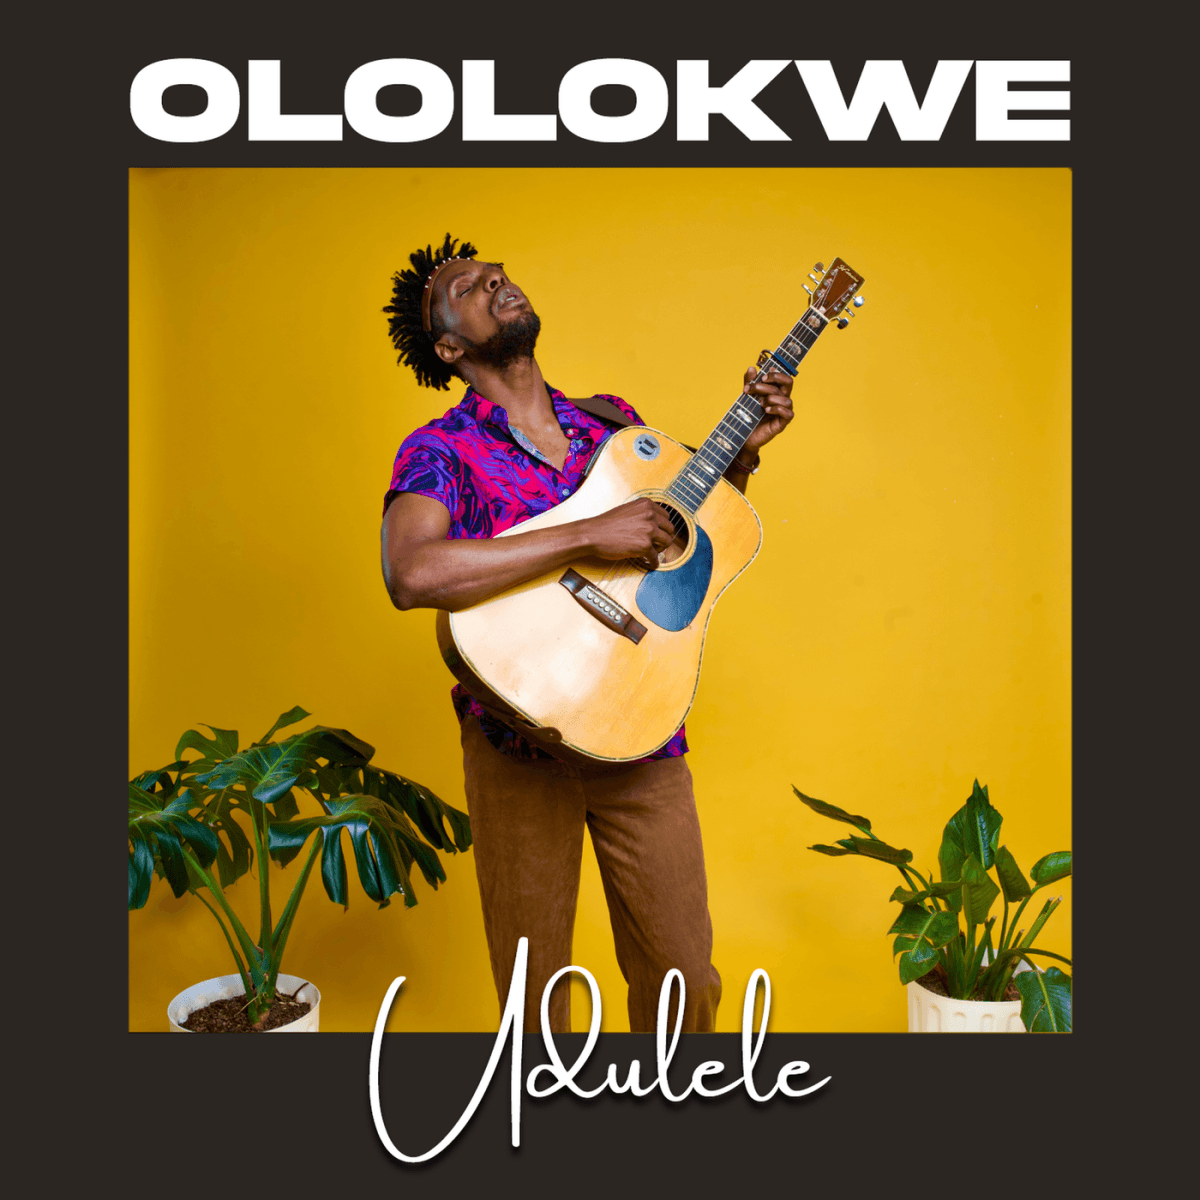 Udulele New Release: OLOLOKWE - EP REVIEW